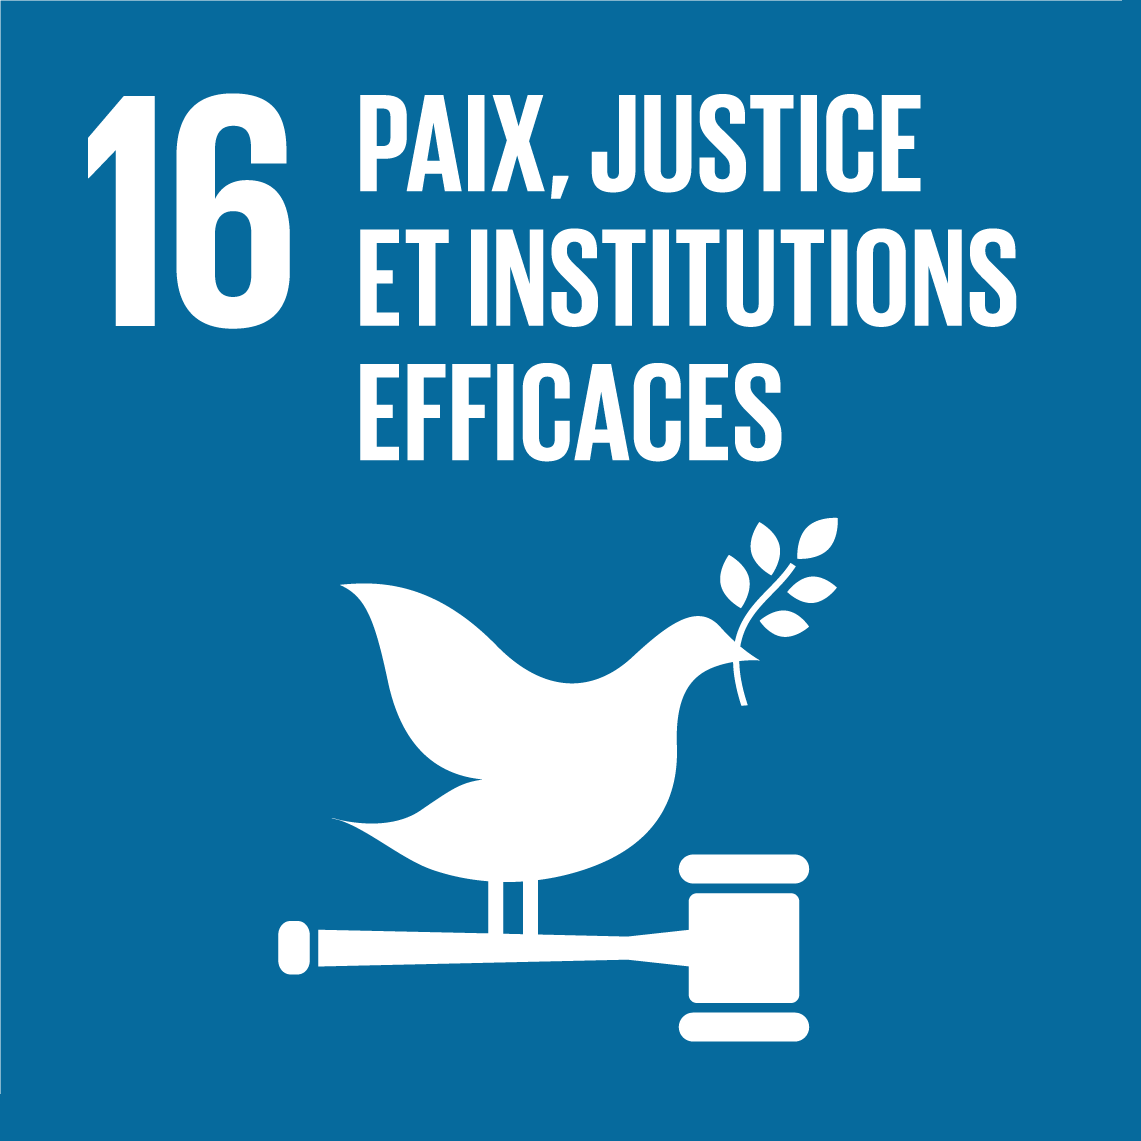 Objectifs de développement durable 16 - Paix, justice et institutions efficaces